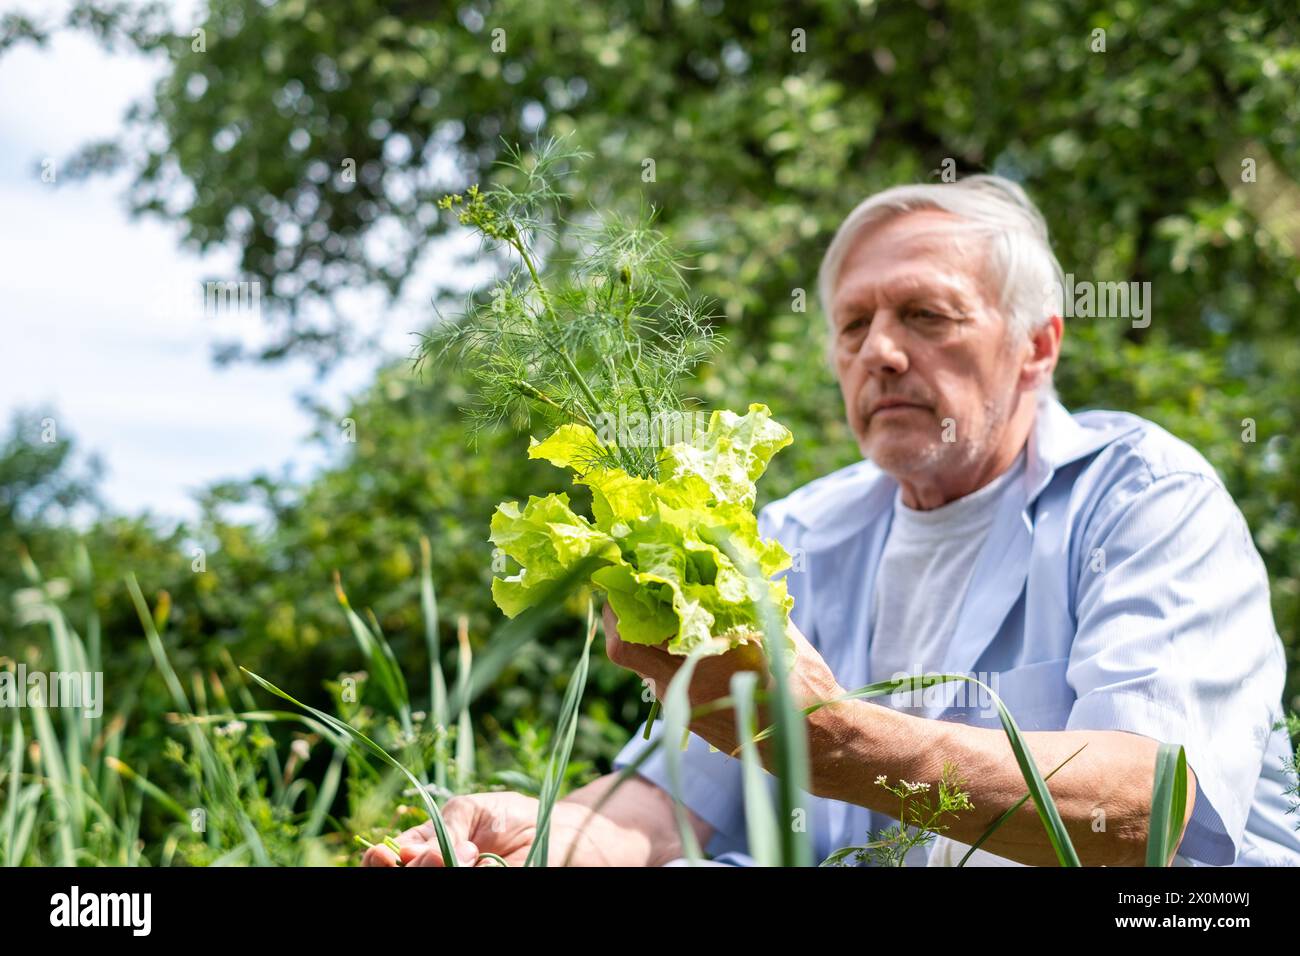 Ein Mann der voranschreitenden Jahre genießt das einfache Vergnügen, frisches Gartengrün zu halten, was eine friedliche Ruhestandstätigkeit verkörpert. Hochwertige Fotos Stockfoto